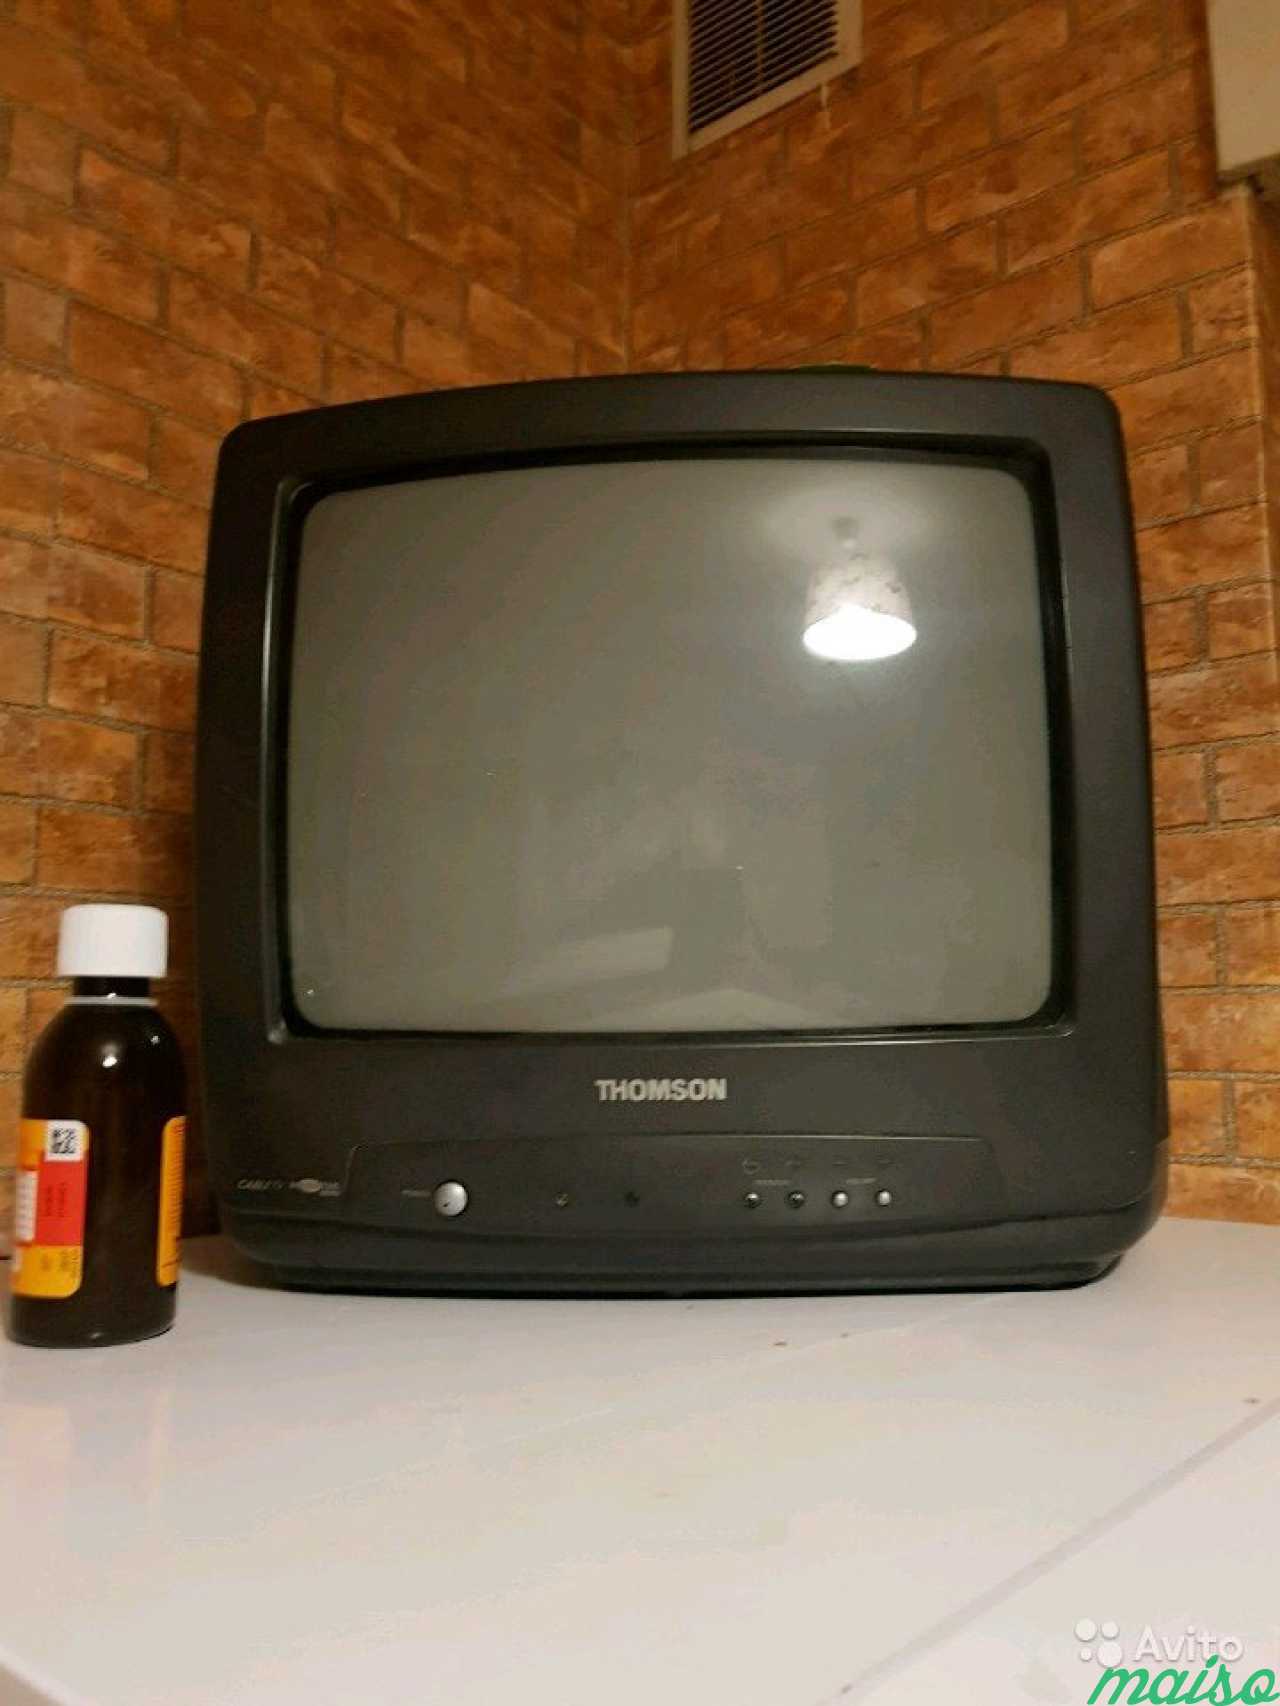 Купить дешевле телевизор спб. Телевизор авито. Самый маленький дешевый телевизор за 500 рублей. Телевизор СПБ. Авито телевизоры б/у.